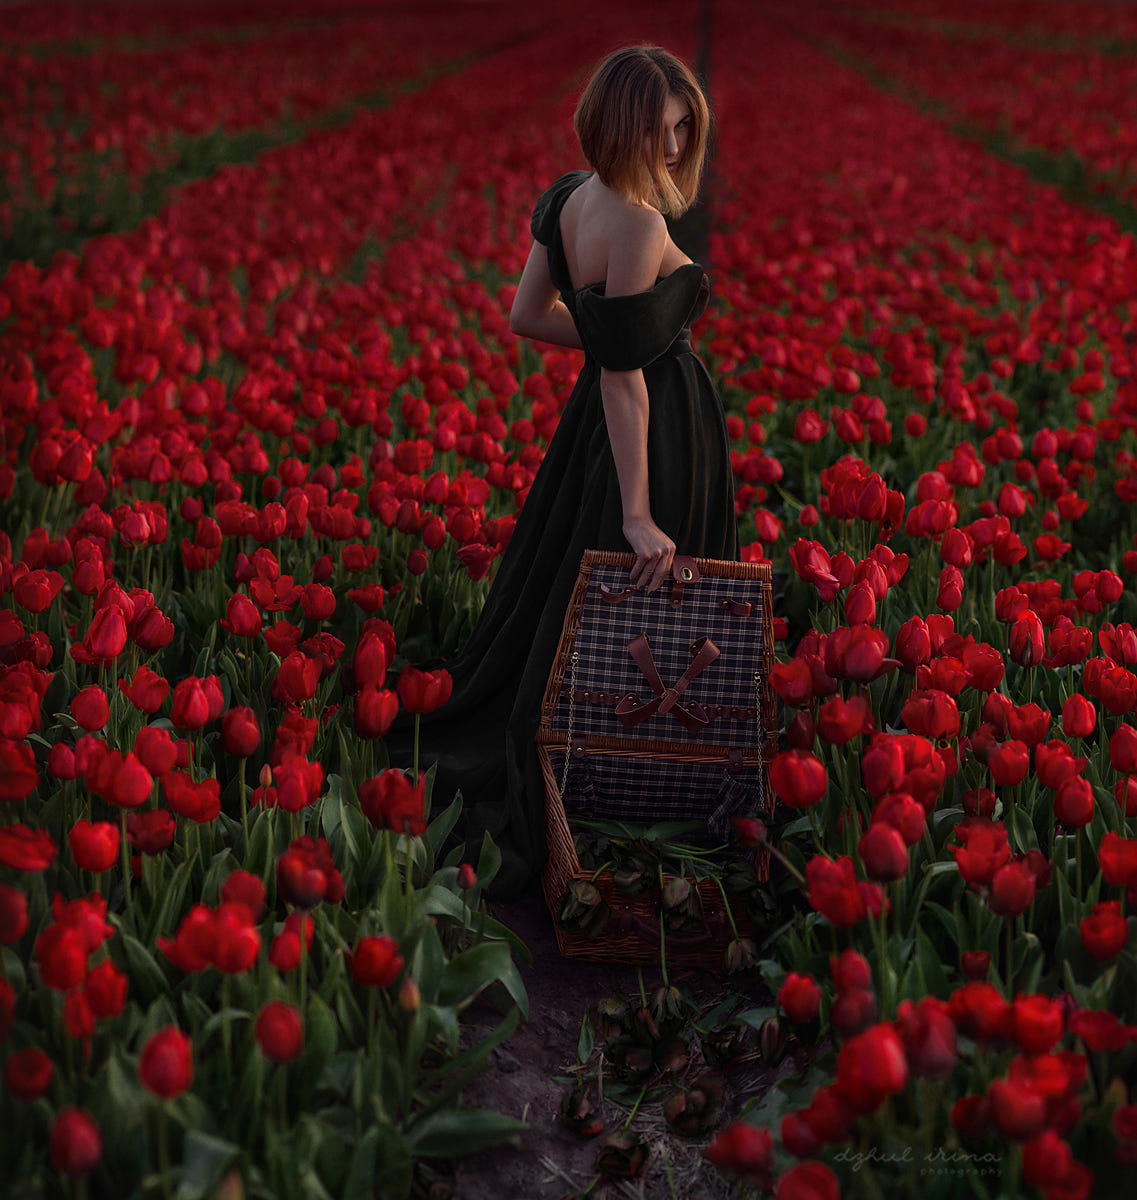 Фото Девушка в черном платье стоит на поле красных тюльпанов, фотограф Irina Dzhul